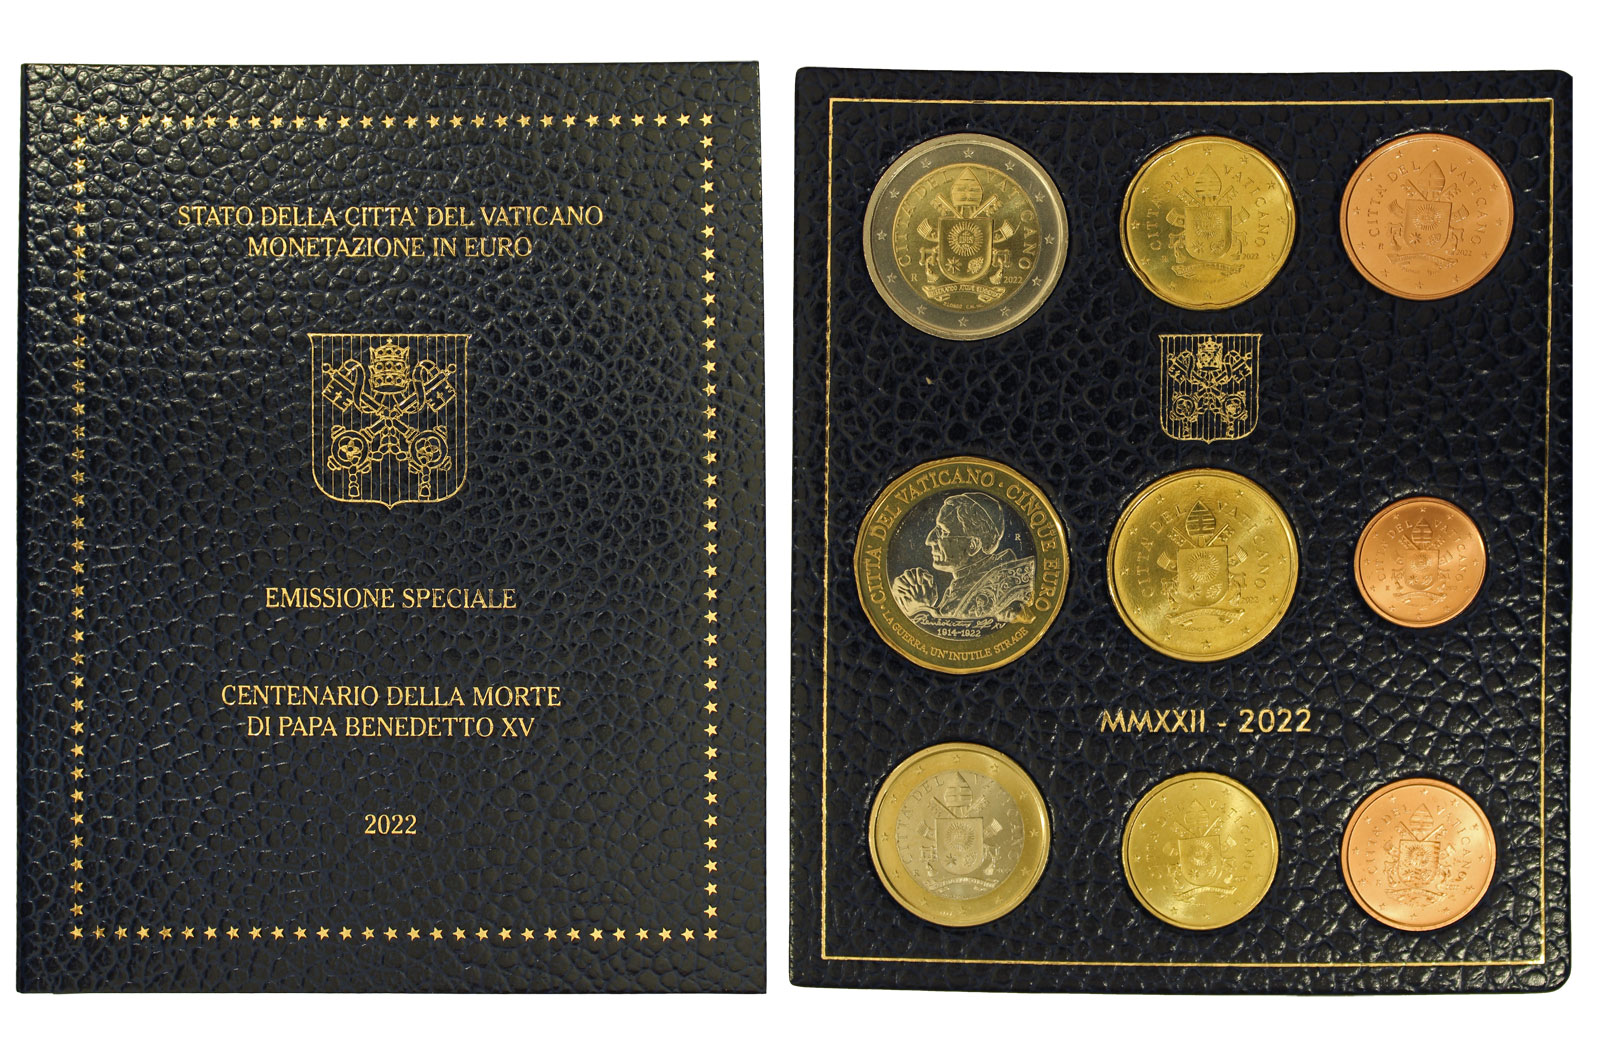 Emissione speciale "Centenario della morte di Papa Benedetto XV" - Serie completa di 9 monete in confezione originale